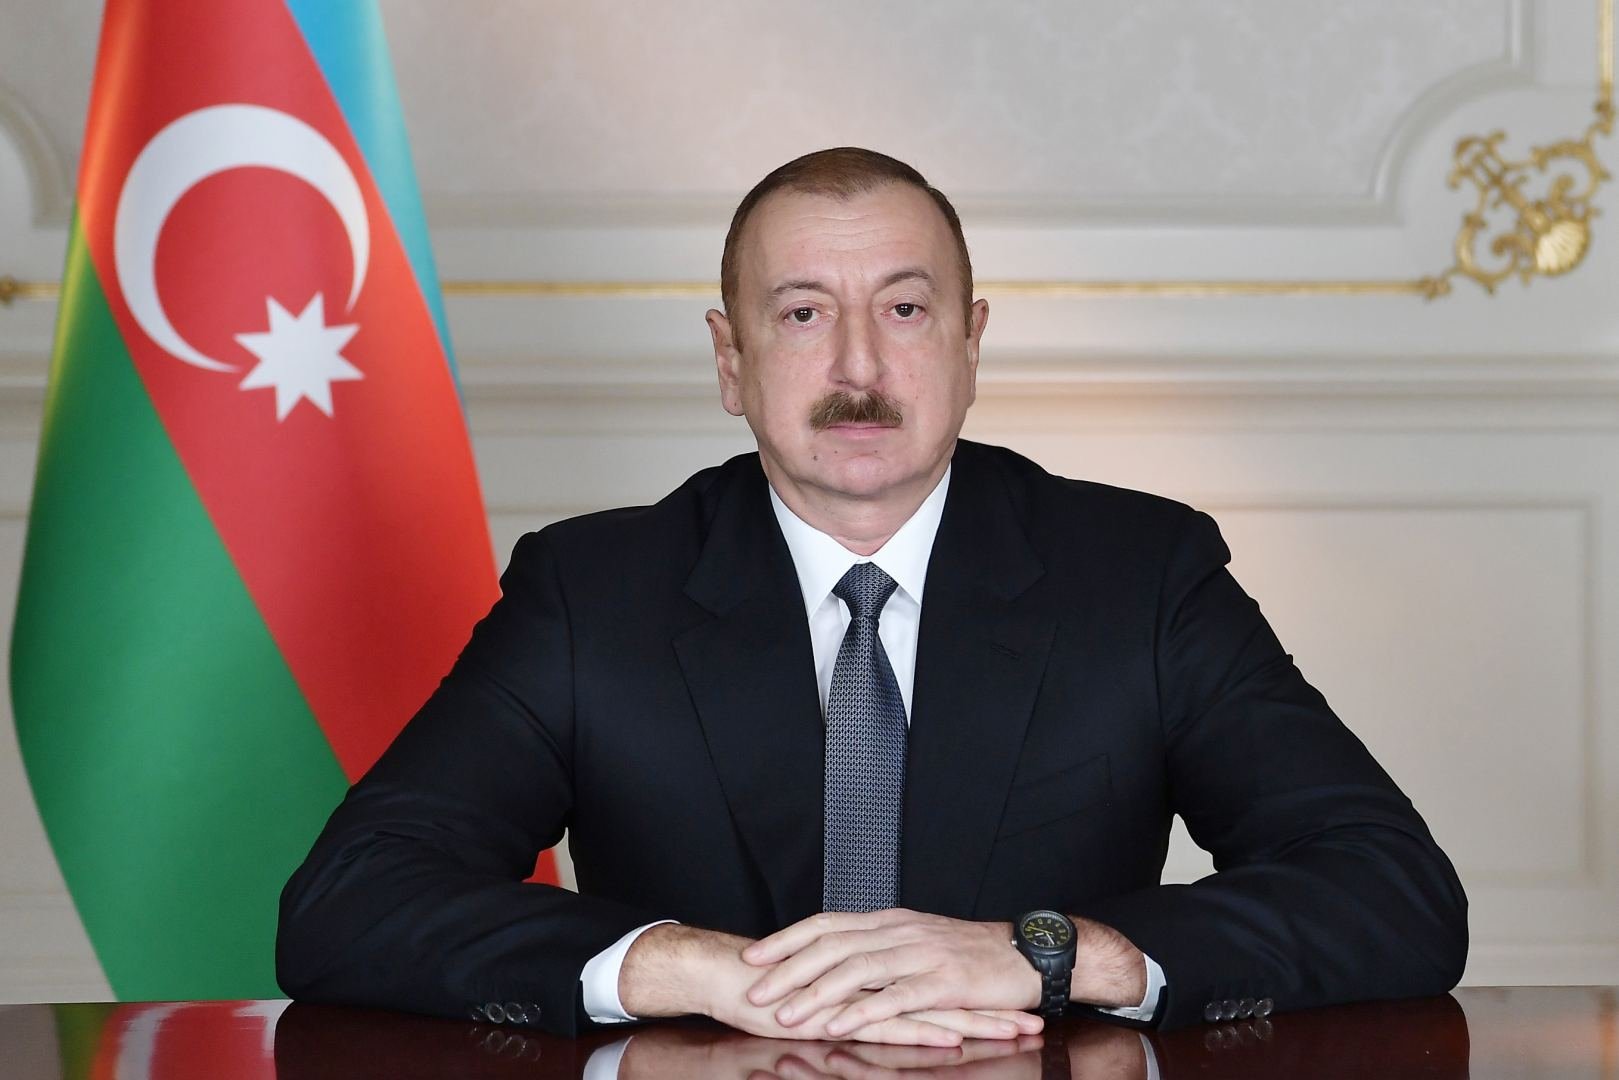 Президент Ильхам Алиев принимает участие в мероприятии по случаю Национального дня ОАЭ в Дубае